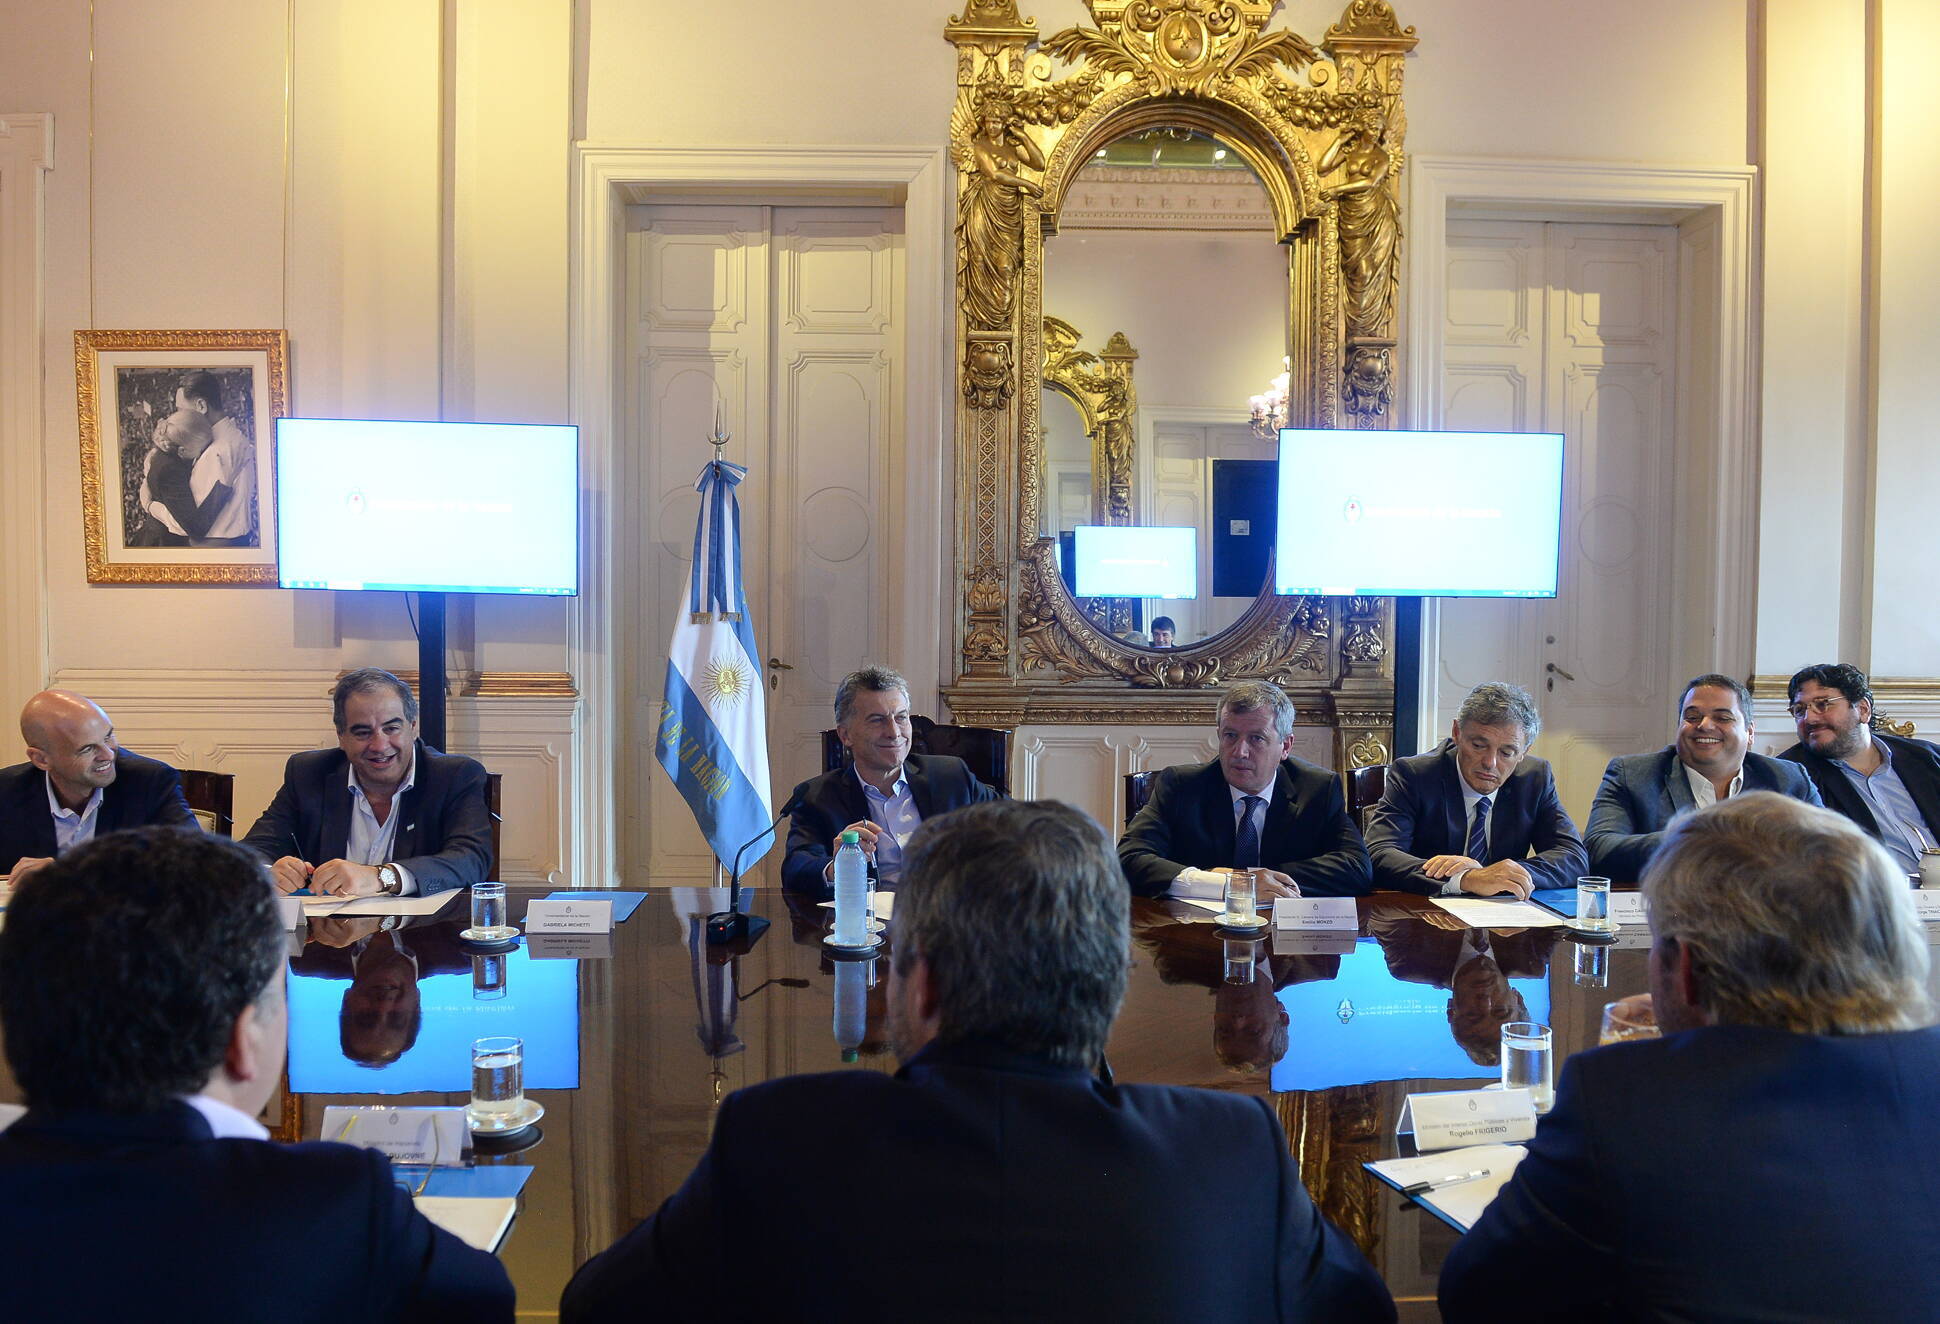 El presidente Macri encabezó una reunión de gabinete en la Casa Rosada